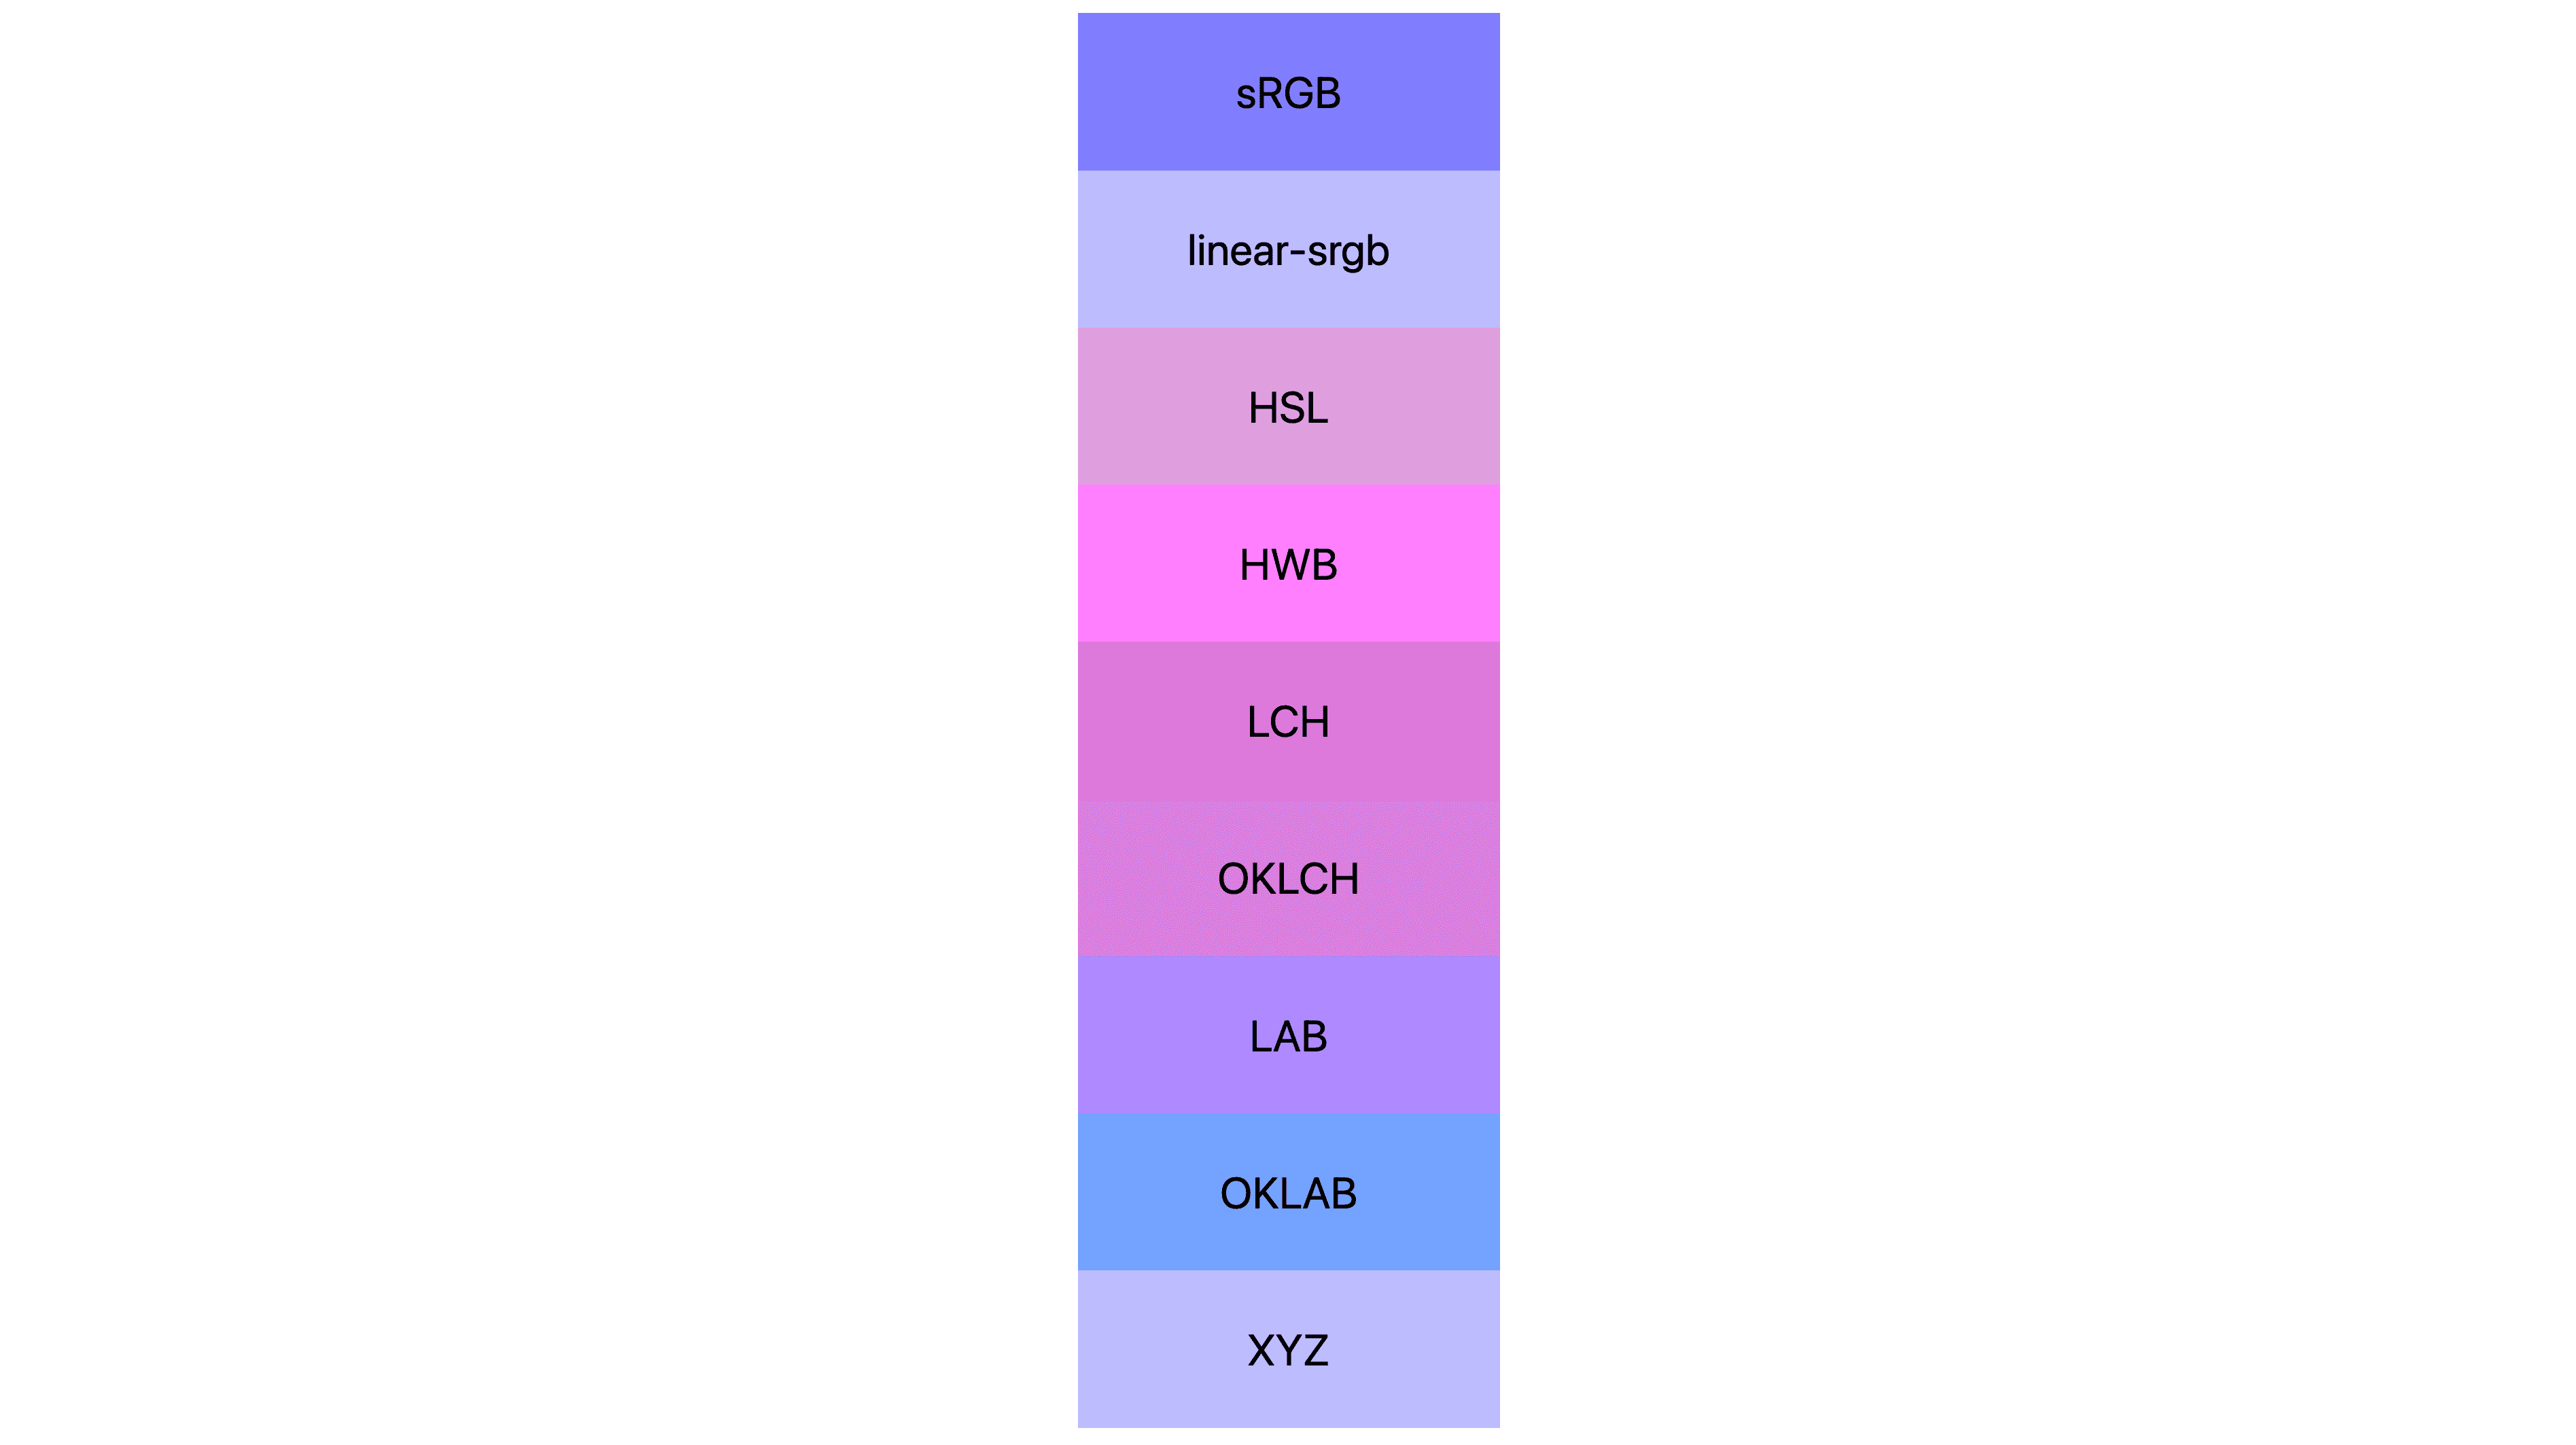 7 מרחבי צבע שונים (srgb, linear-srgb, lch, oklch, lab, oklab, xyz), שכל אחד מהם מניב תוצאות שונות. רבים מהם ורודים או סגולים, חלקם עדיין כחולים.